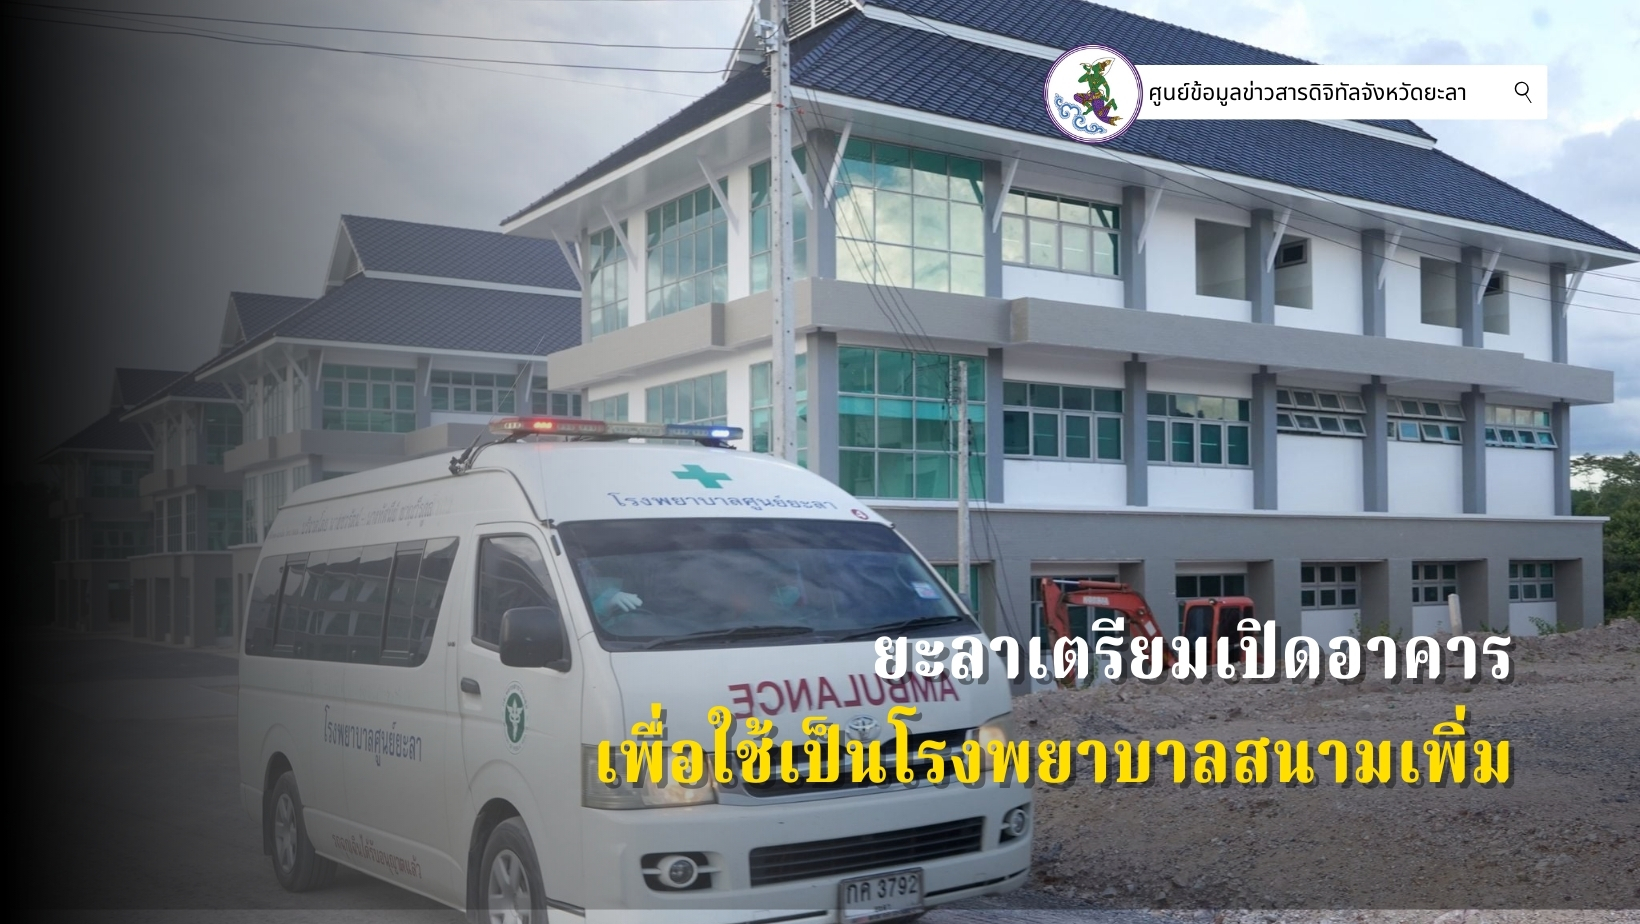 ยะลาผู้ป่วยติดเชื้อเข้ารับการรักษาที่โรงพยาบาลสนามต่อเนื่อง เตรียมเปิดอาคารเพิ่ม หลังที่ 9 